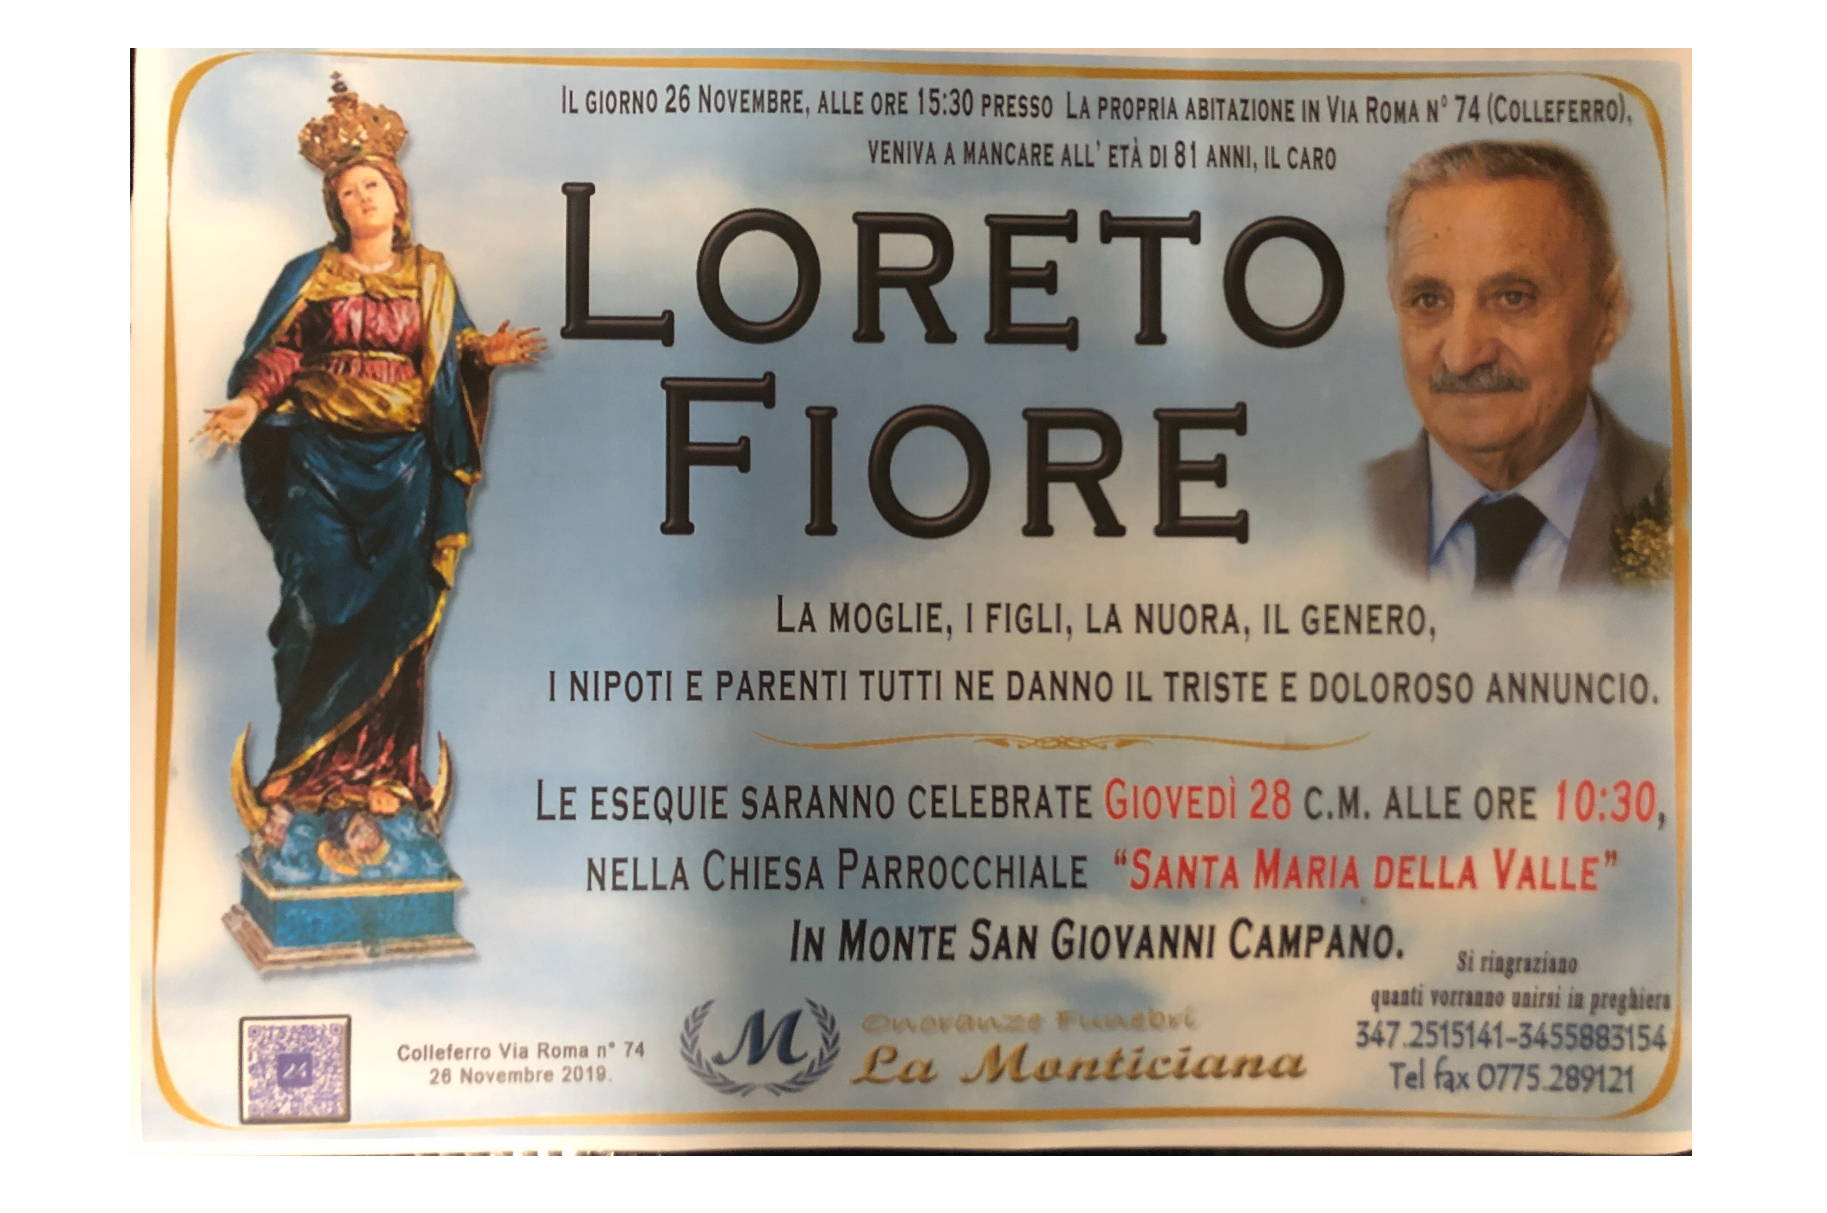 Loreto Fiore